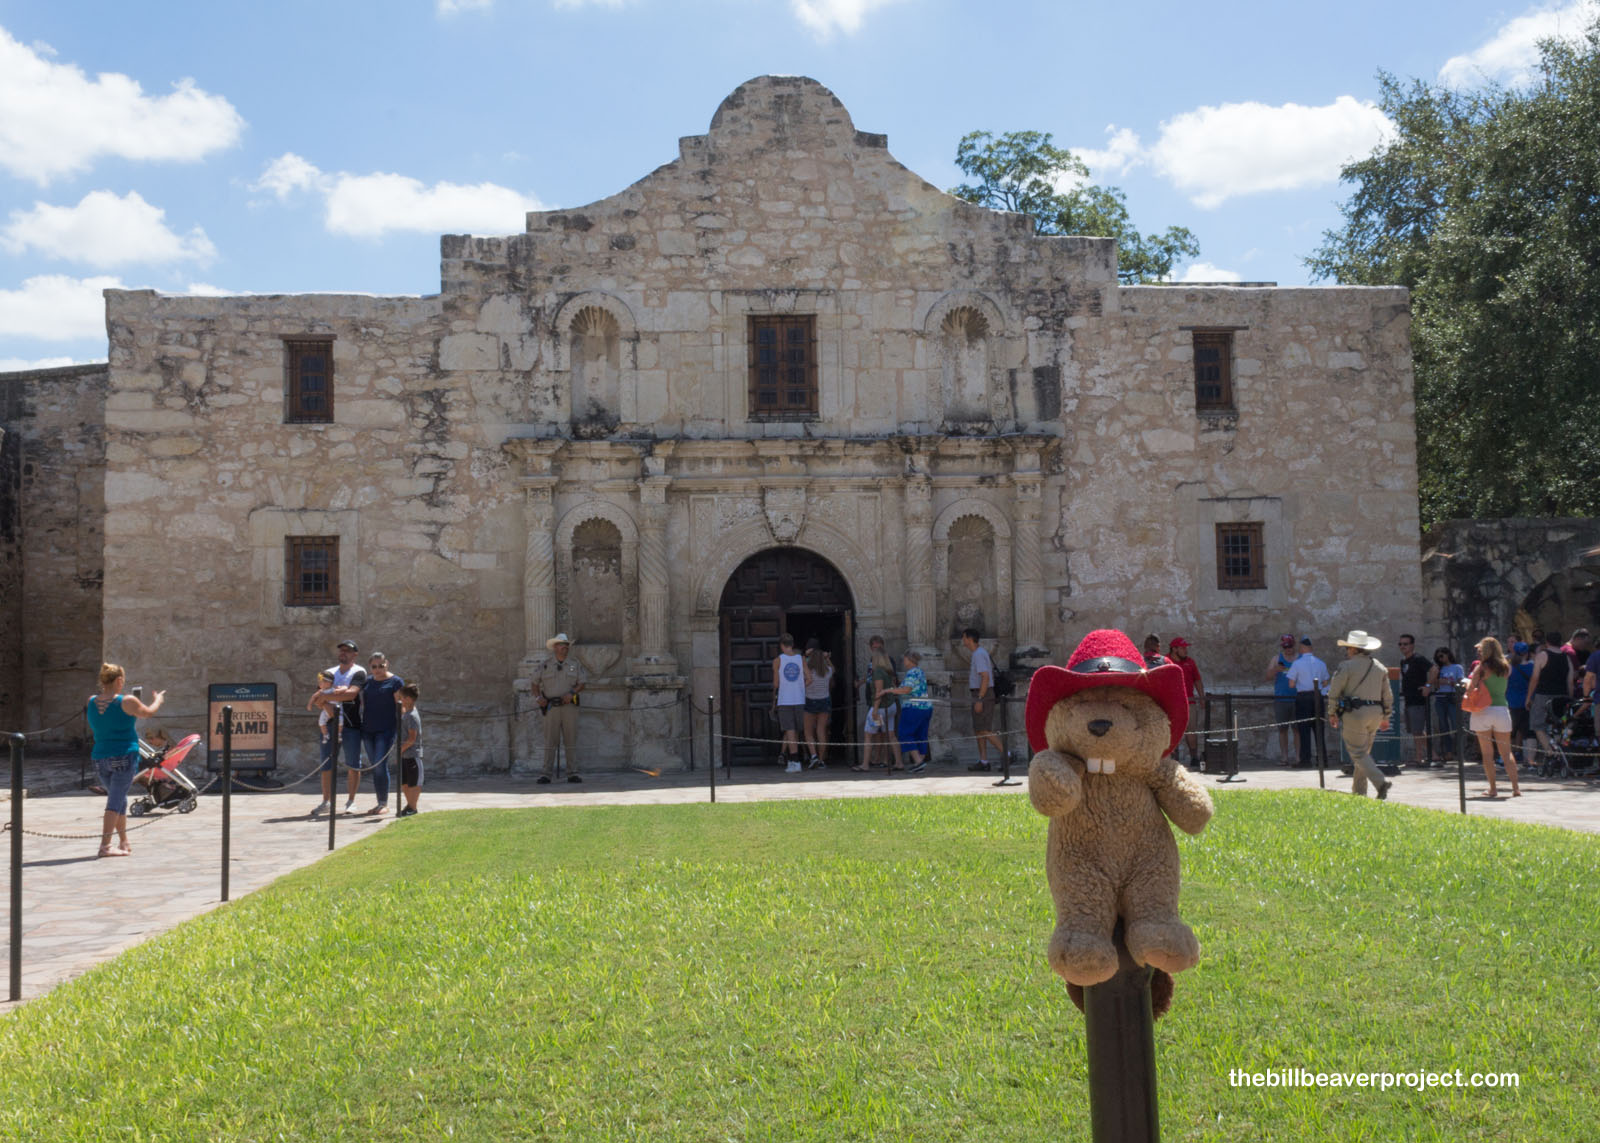 The Alamo (Mission San Antonio de Padua)